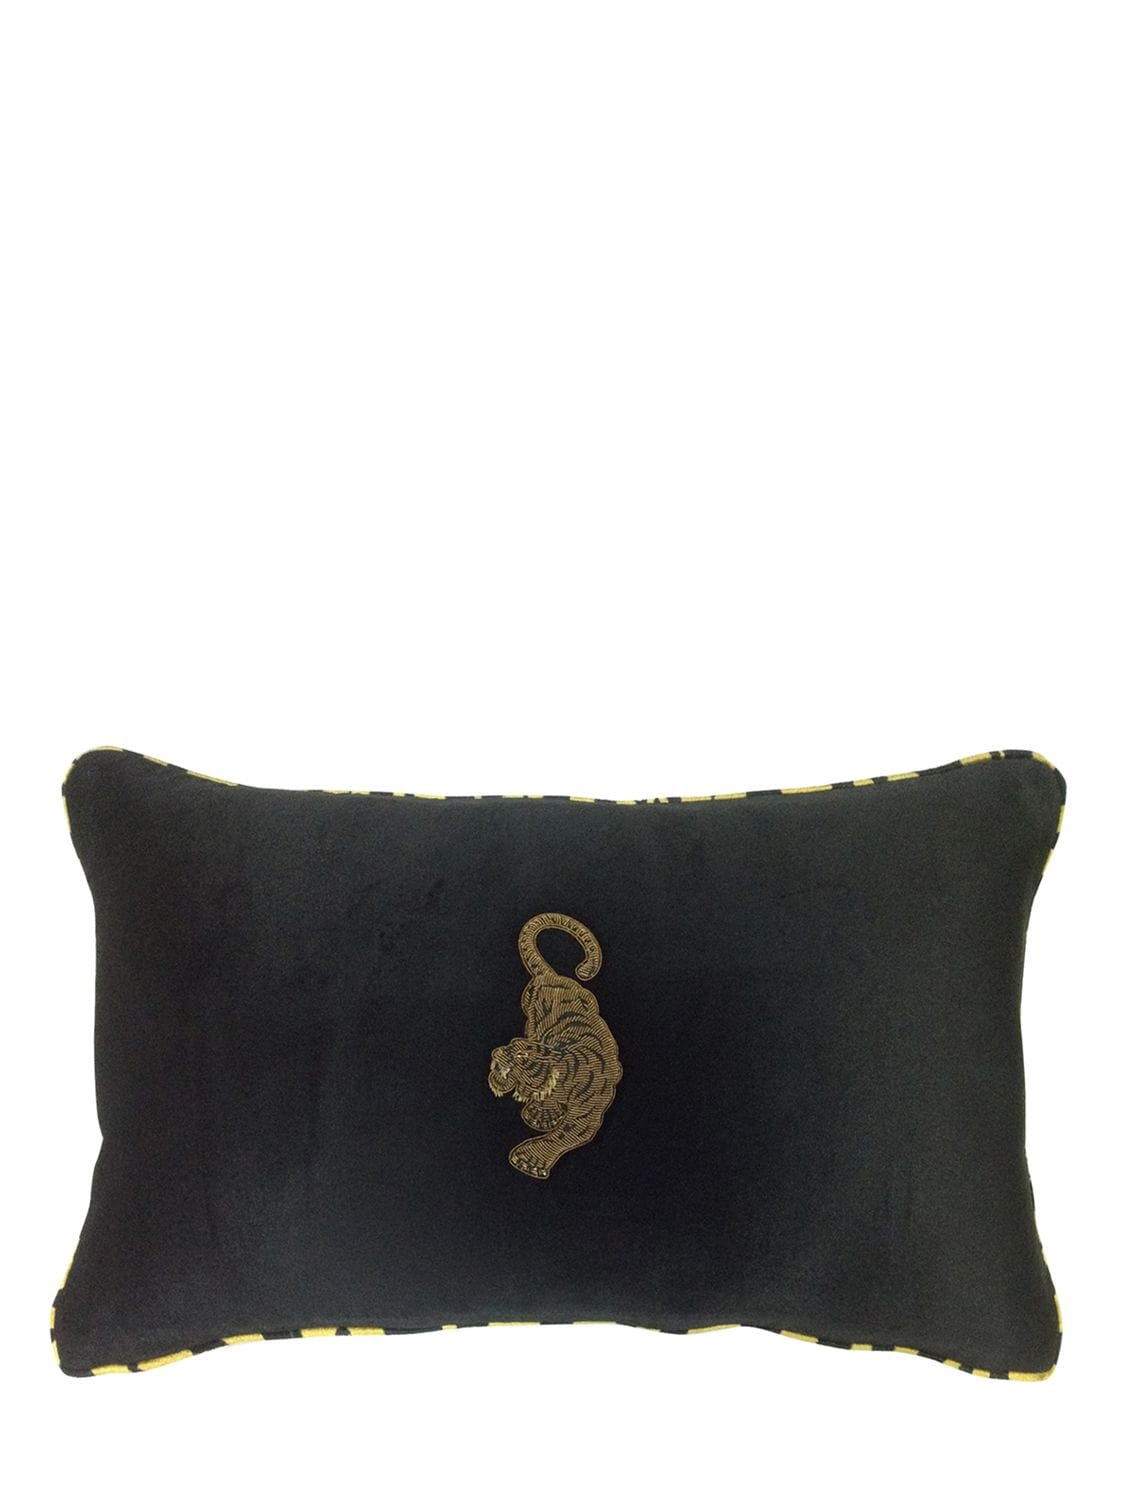 Les Ottomans Embroidered Velvet Cushion In Black